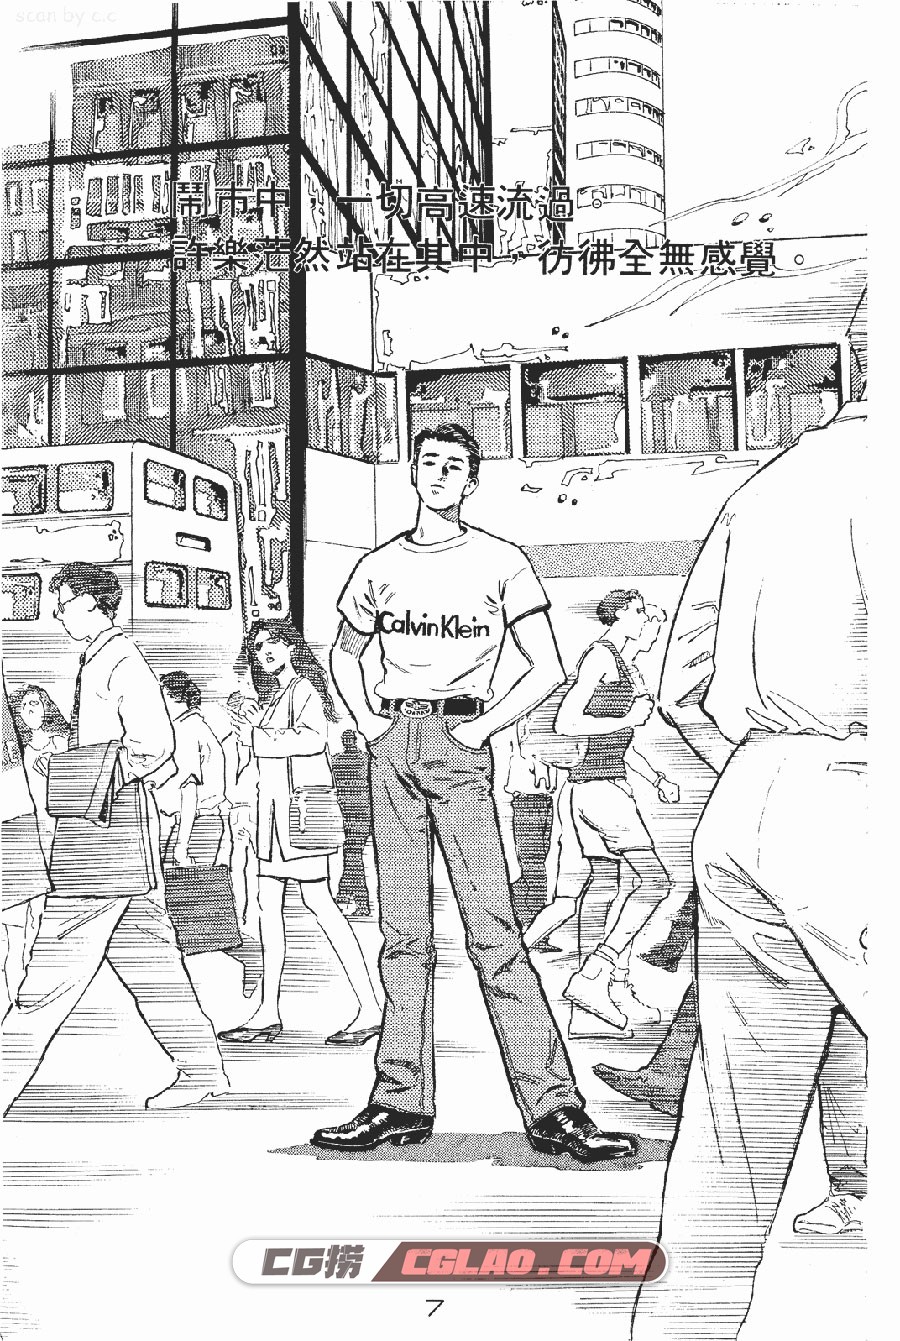 百分百感觉 FEEL100% 刘云杰 1-16册 漫画全集下载 百度网盘,_P01-_0003.jpg